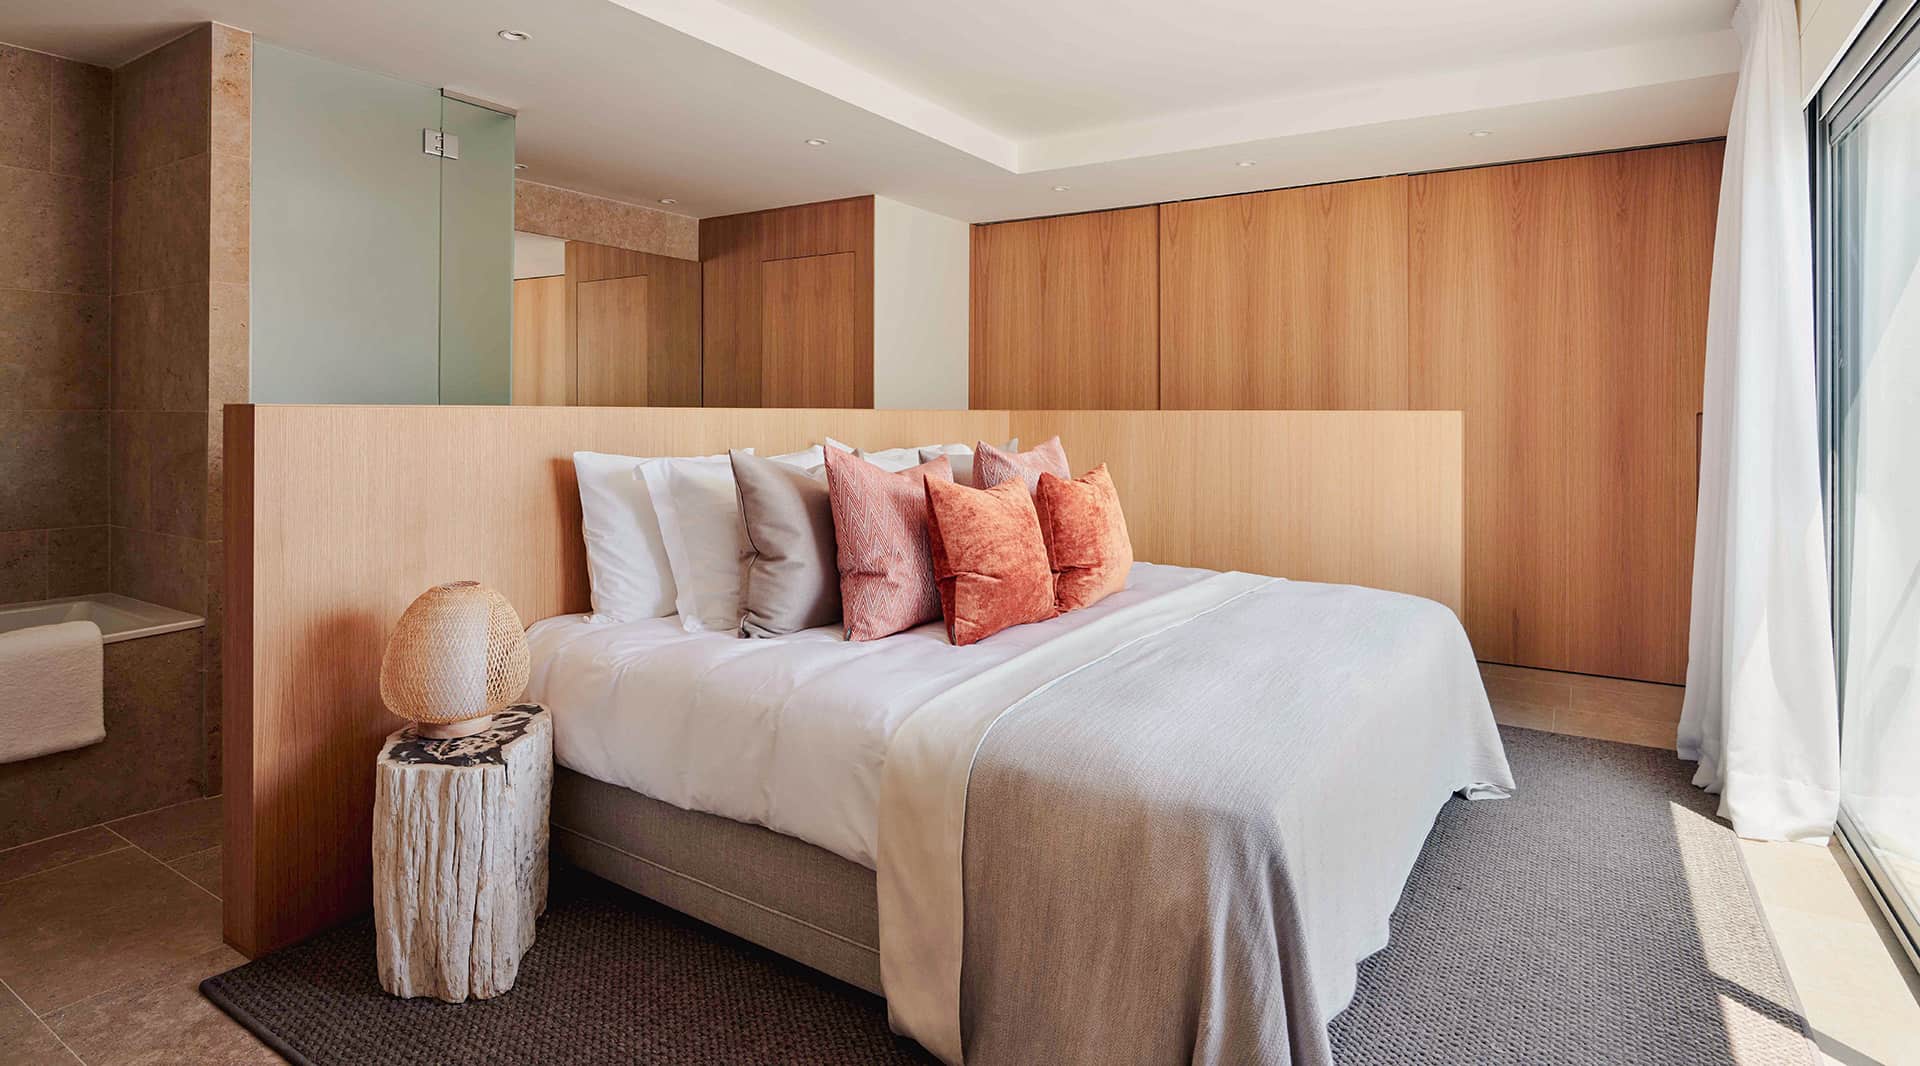 Un lujoso dormitorio principal Comodidad, calidez y conveniencia en cada uno de los espacios reflejan el espíritu de vida ibicenco.Ampliar